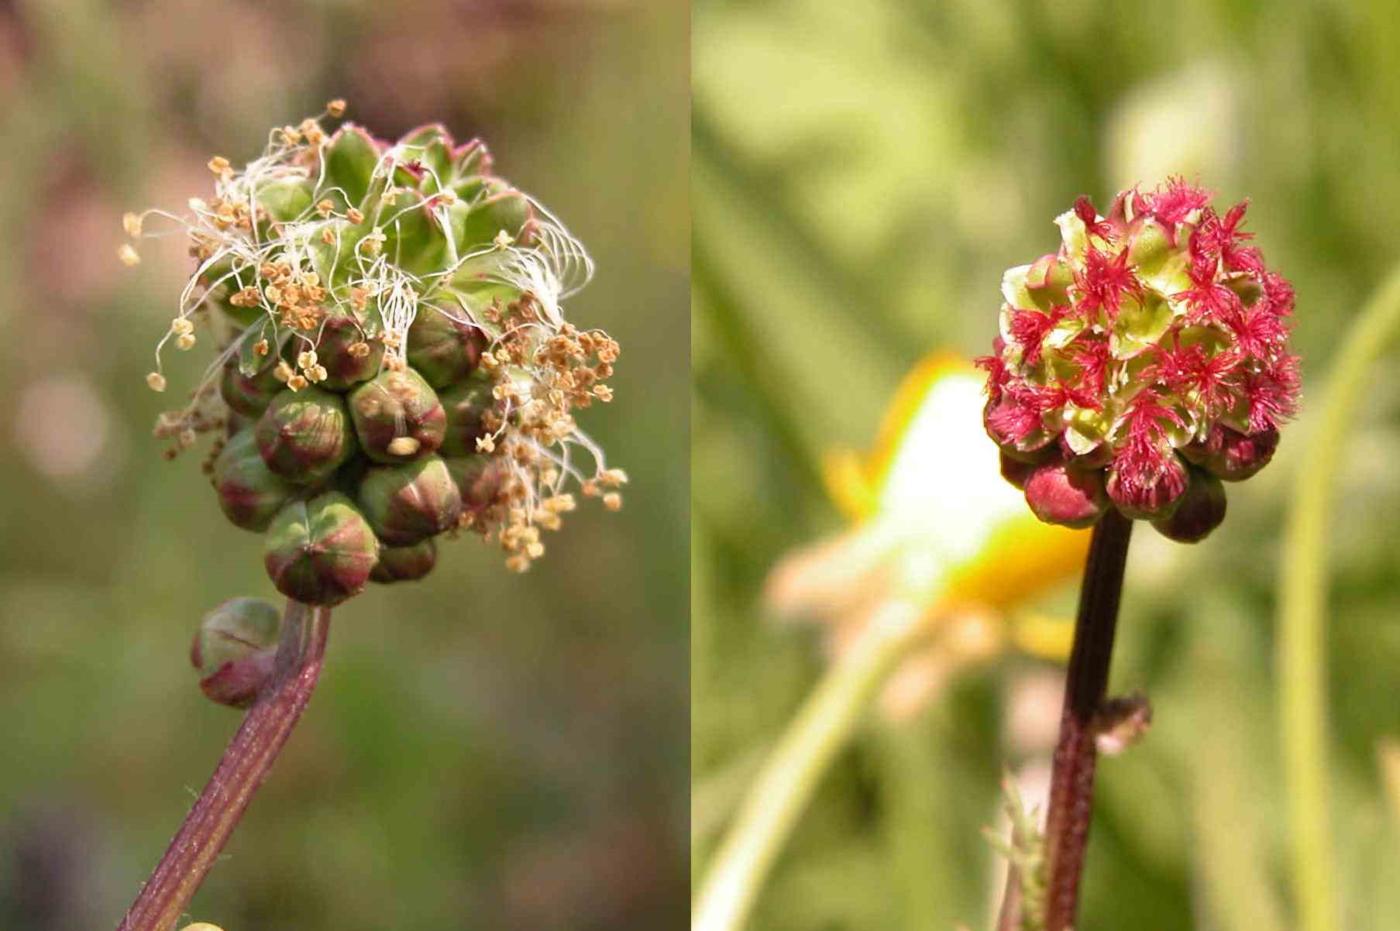 Burnet, Salad/Fodder flower